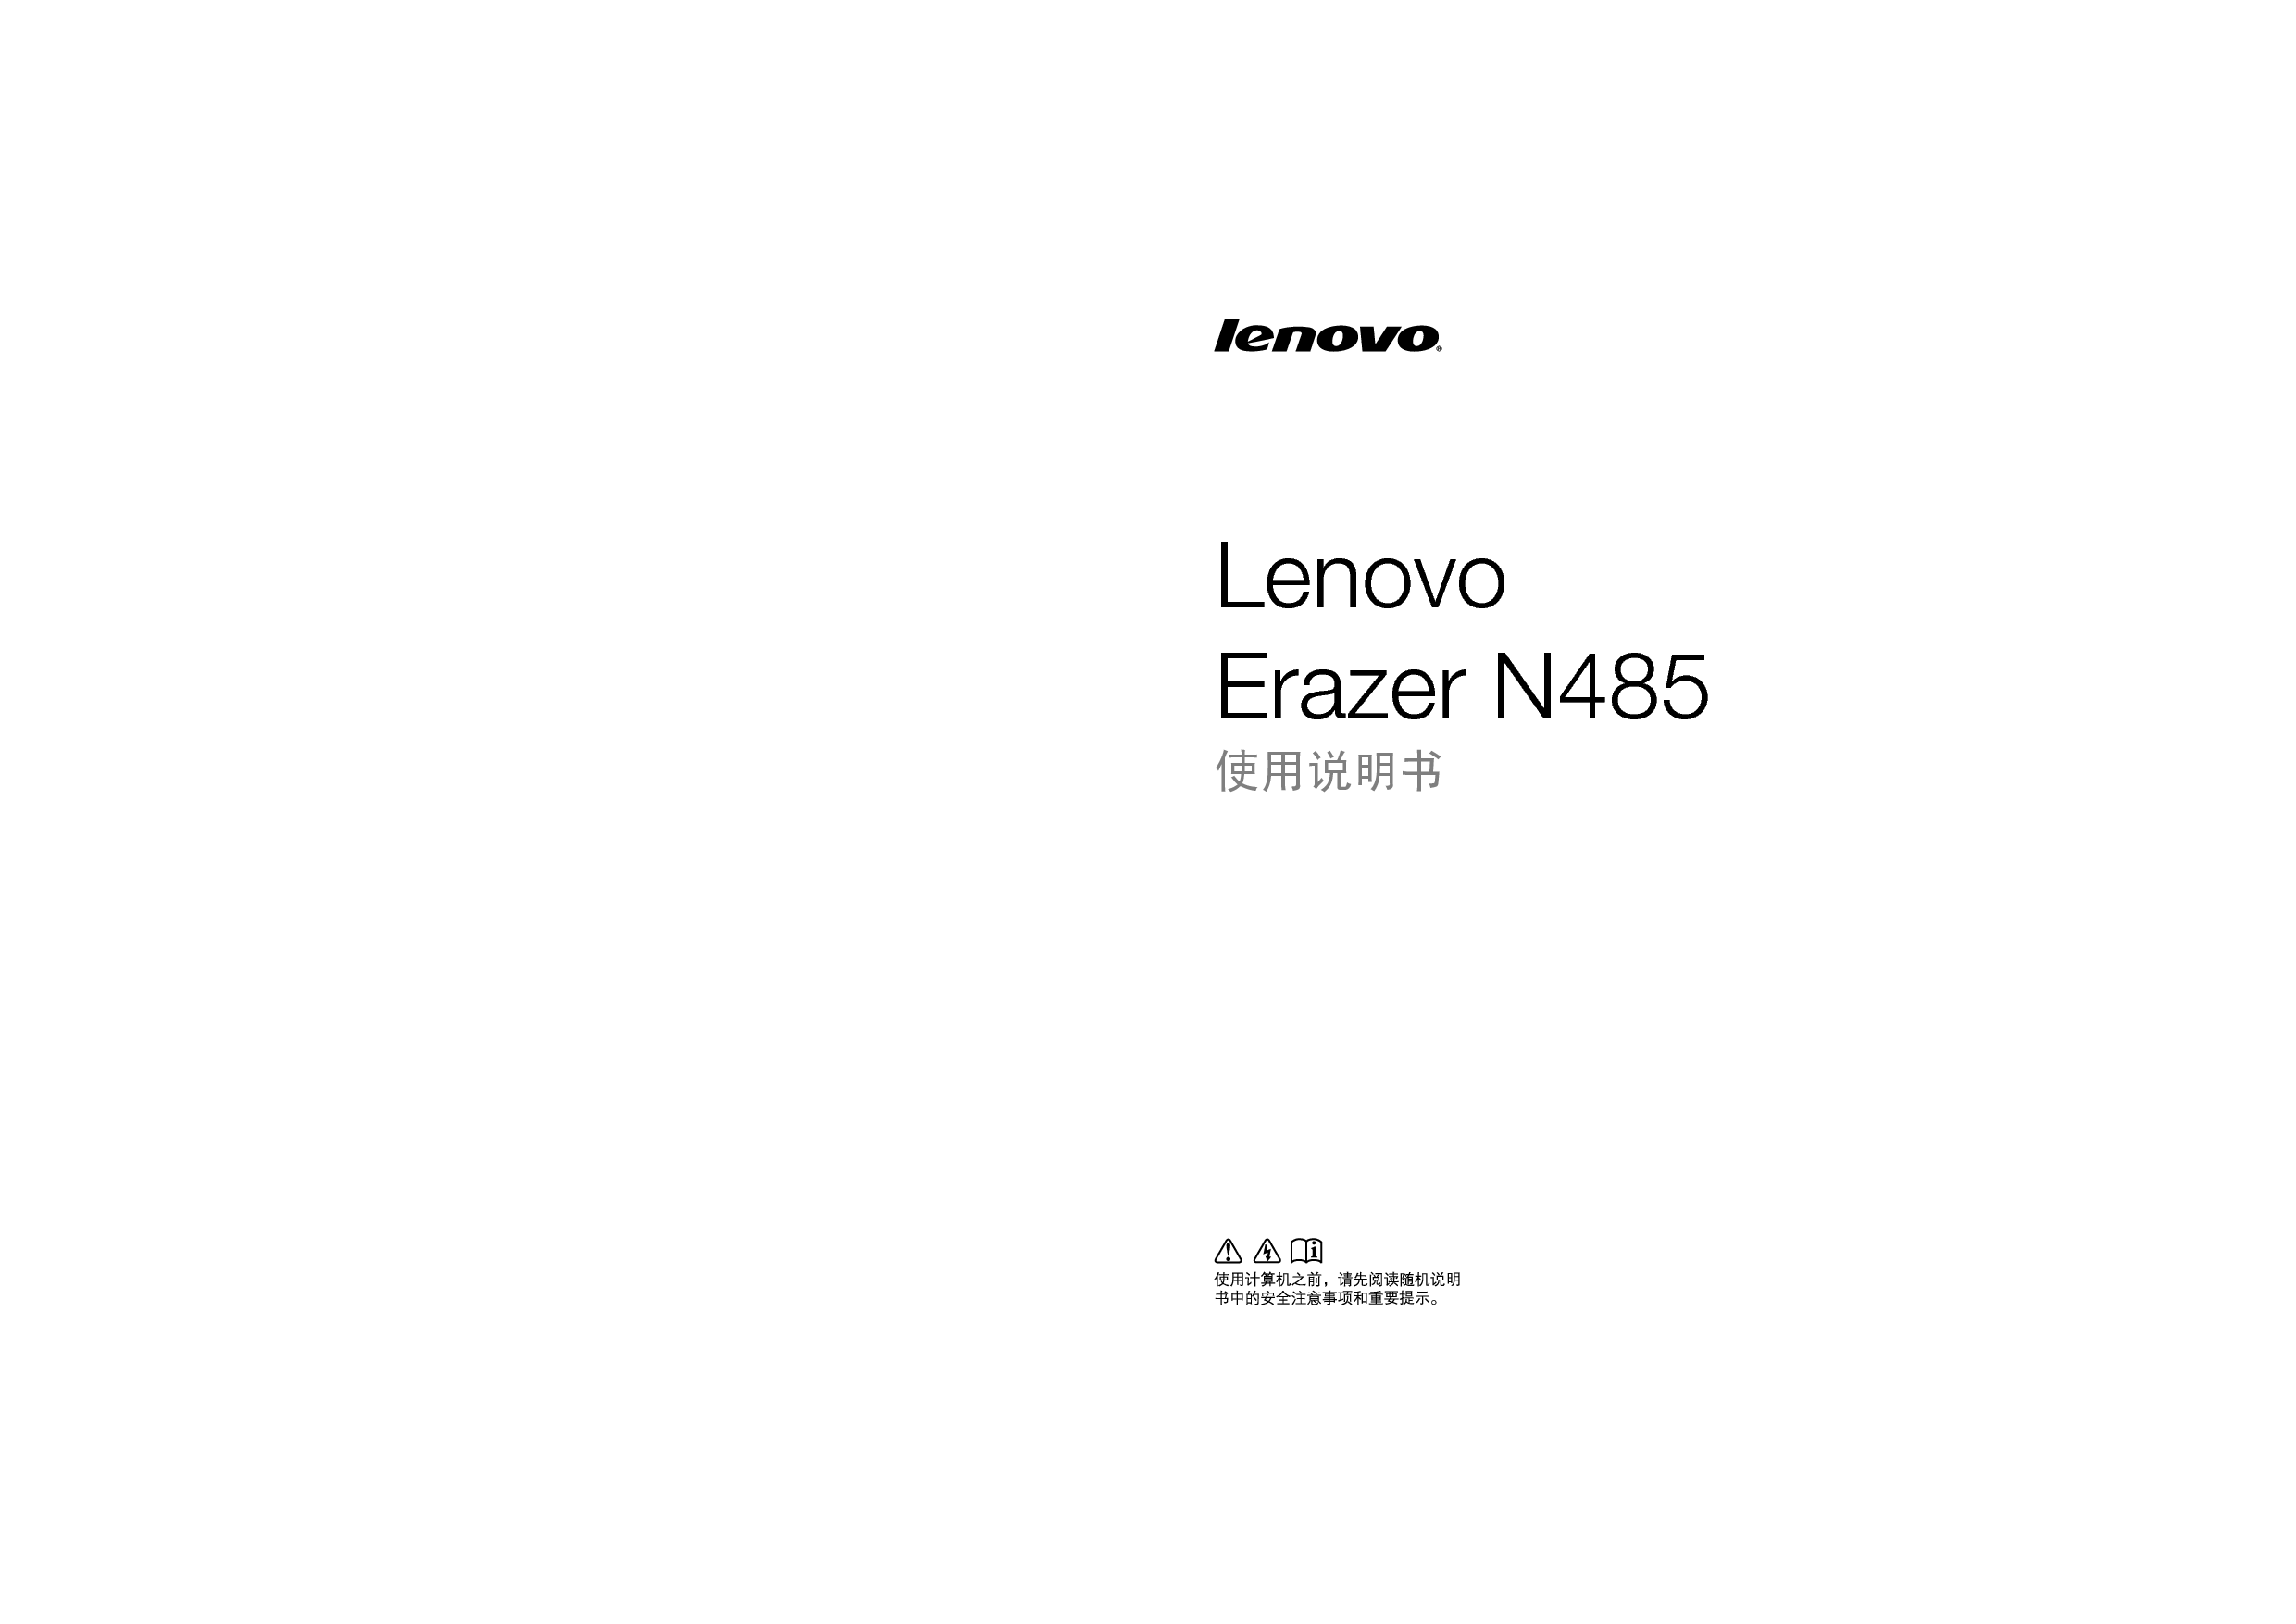 联想 Lenovo ERAZER N485 使用说明书 封面